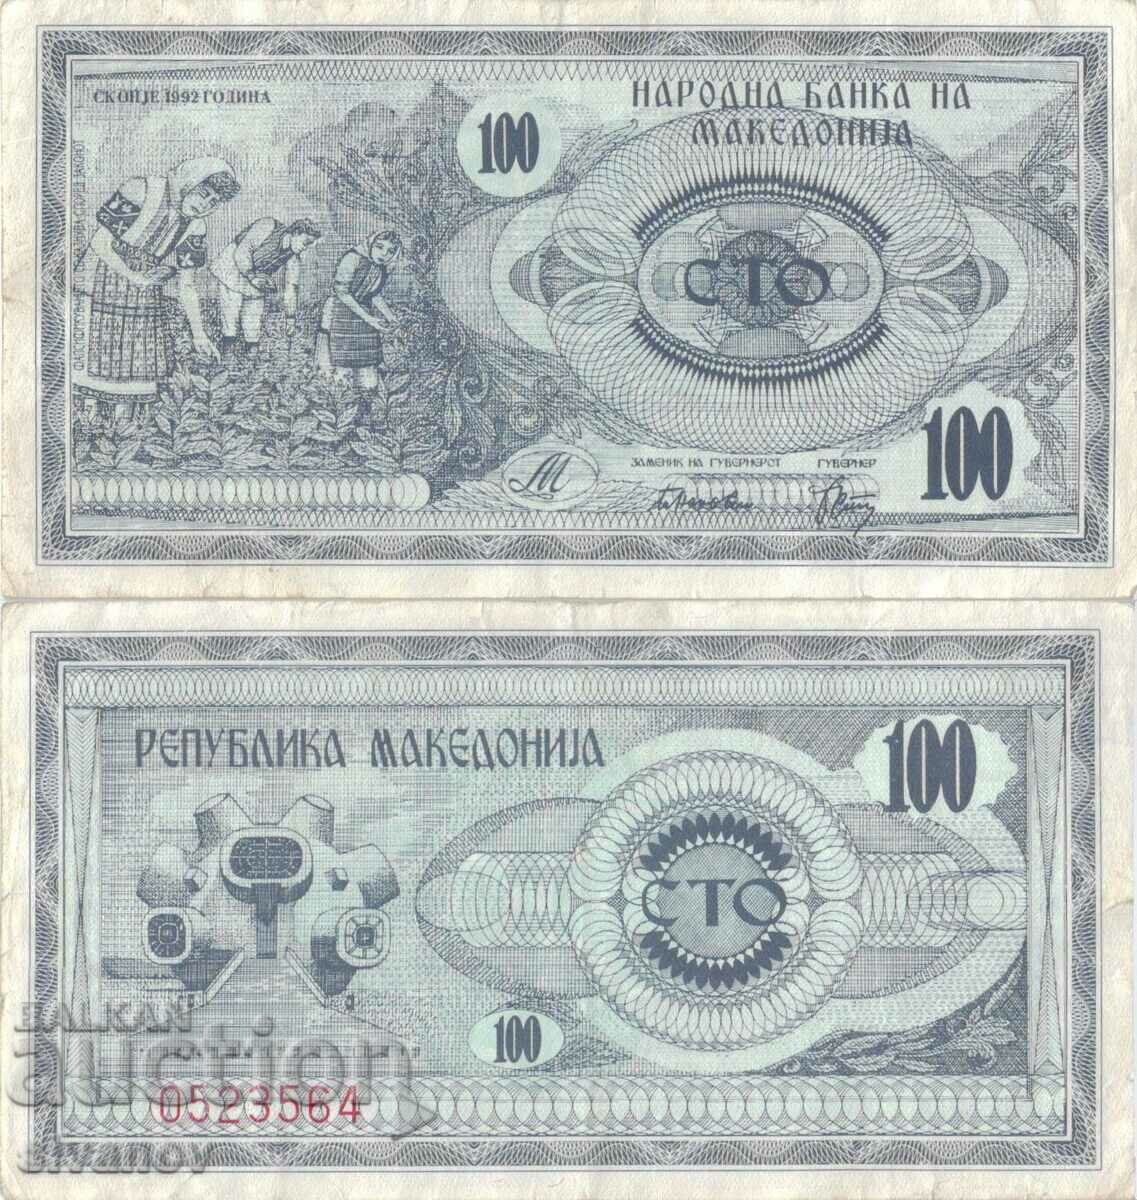 Macedonia 100 denars 1992 banknote #5210